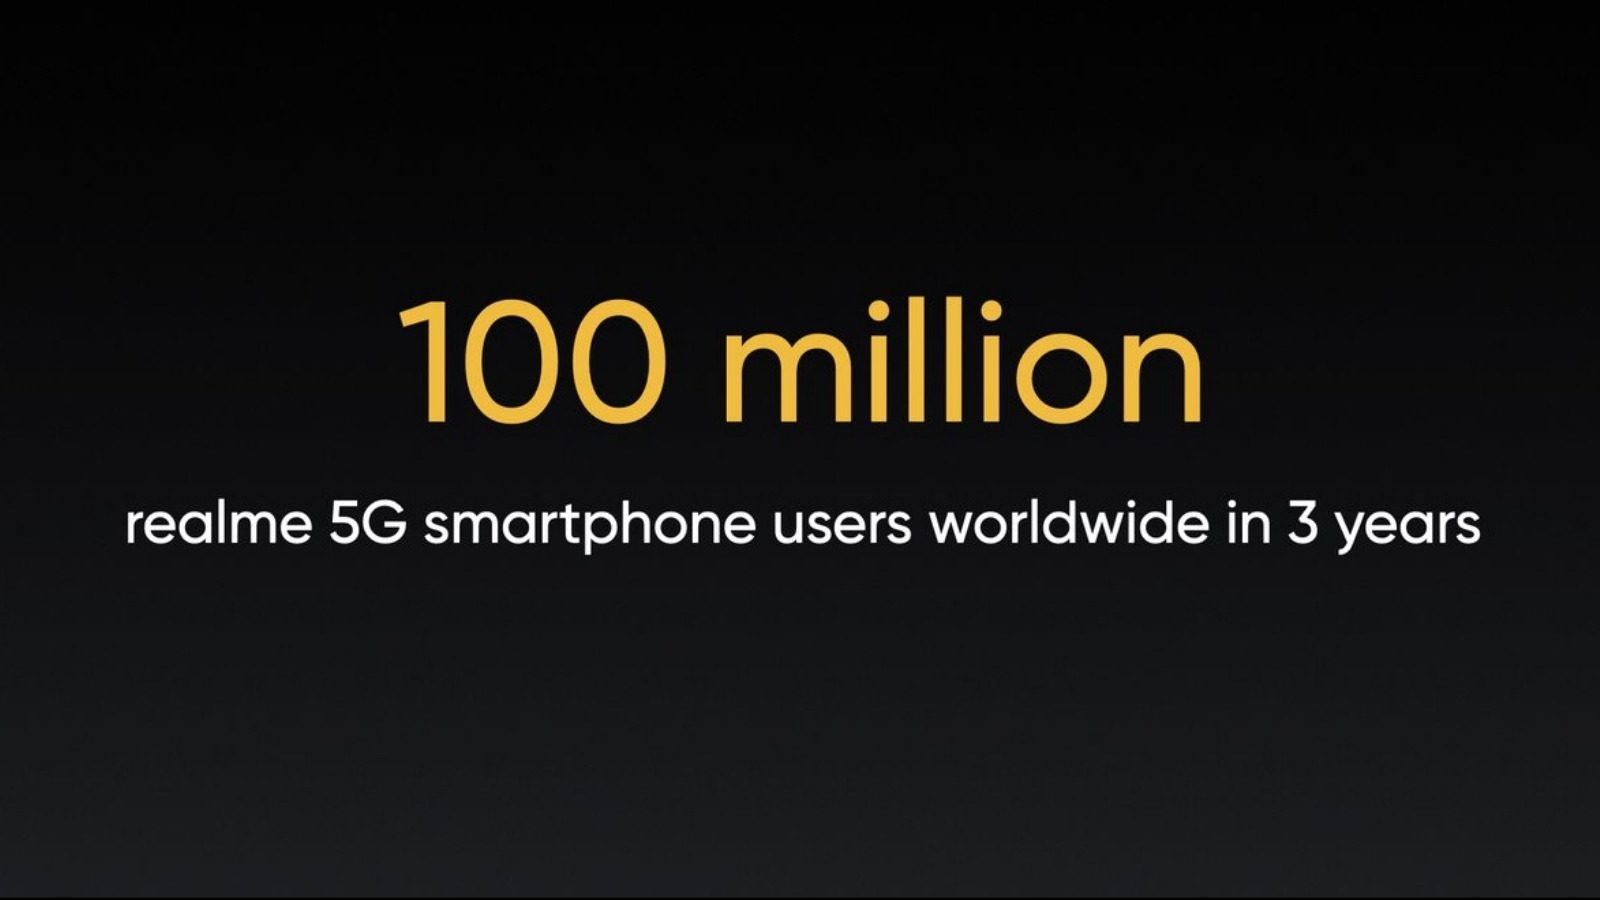 Realme представит телефоны 5G 100 миллионам молодых потребителей через 3 года